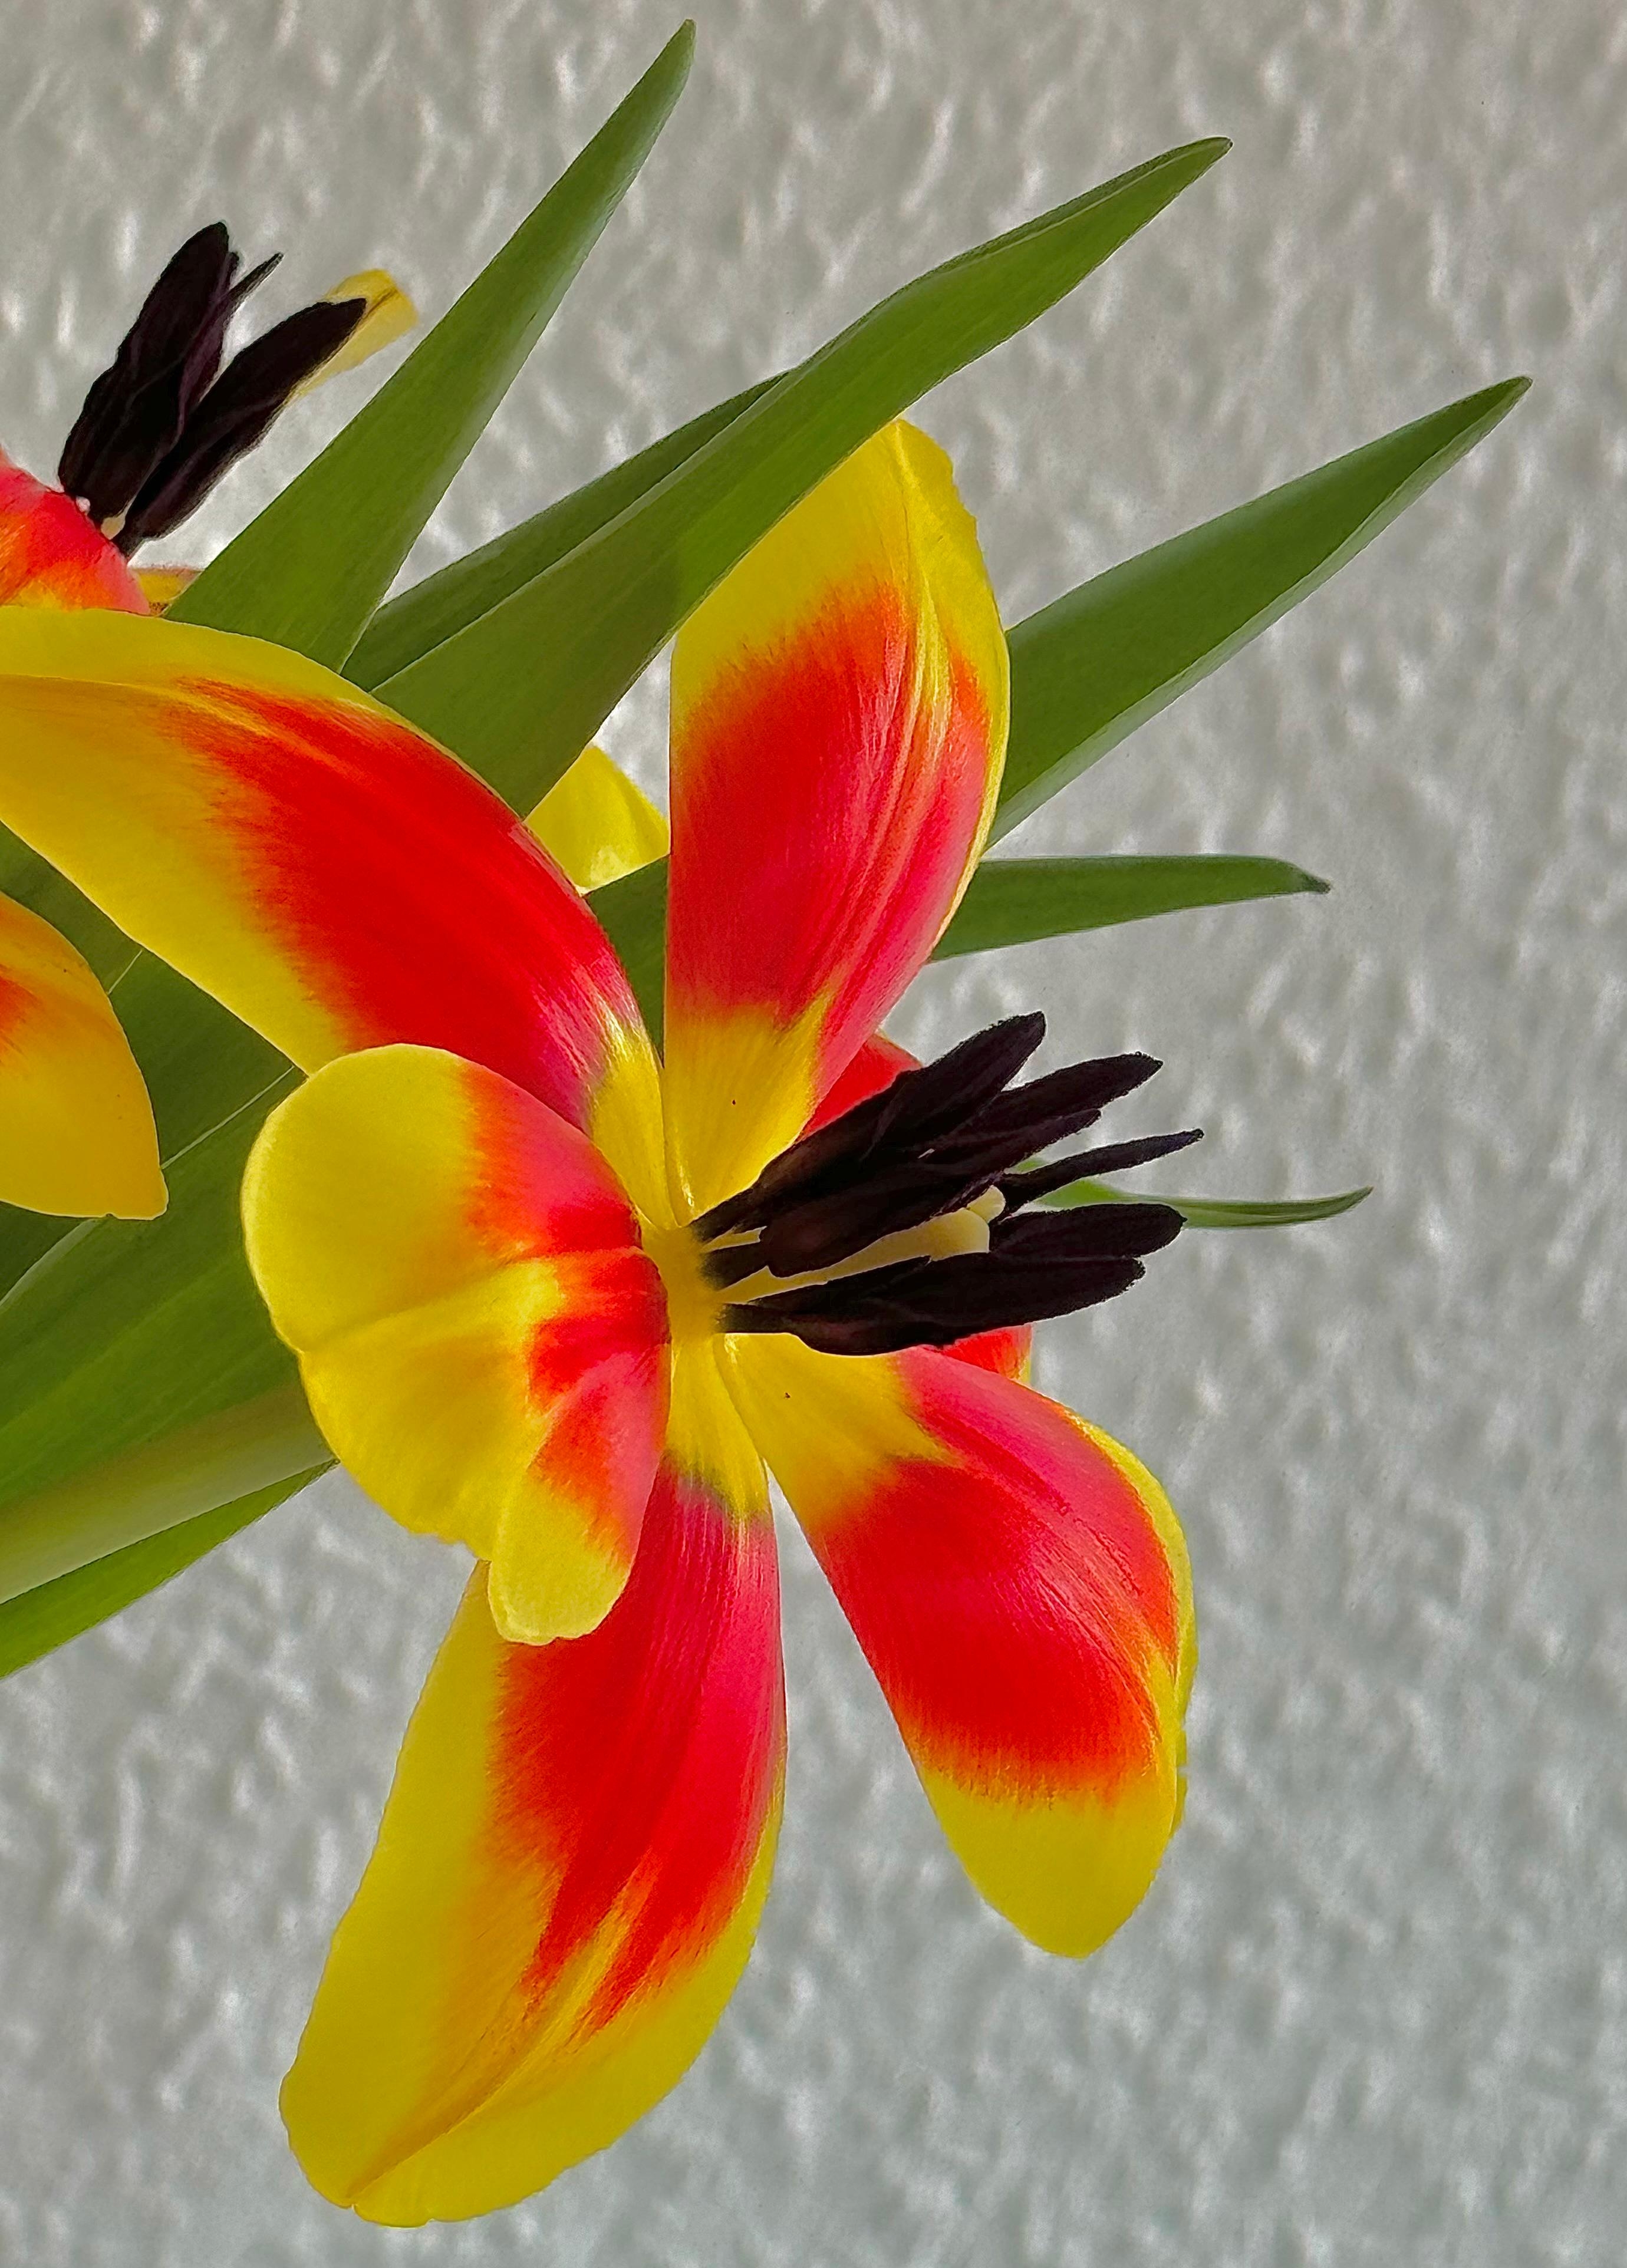 #Tulpen gepimpt 🫶🏼..einfach die #Blüten umklappen..die #Farben kommen toll heraus und es sieht fast tropisch aus..#Diy mit #Blumen #Dekoidee #Frühling #Interior 